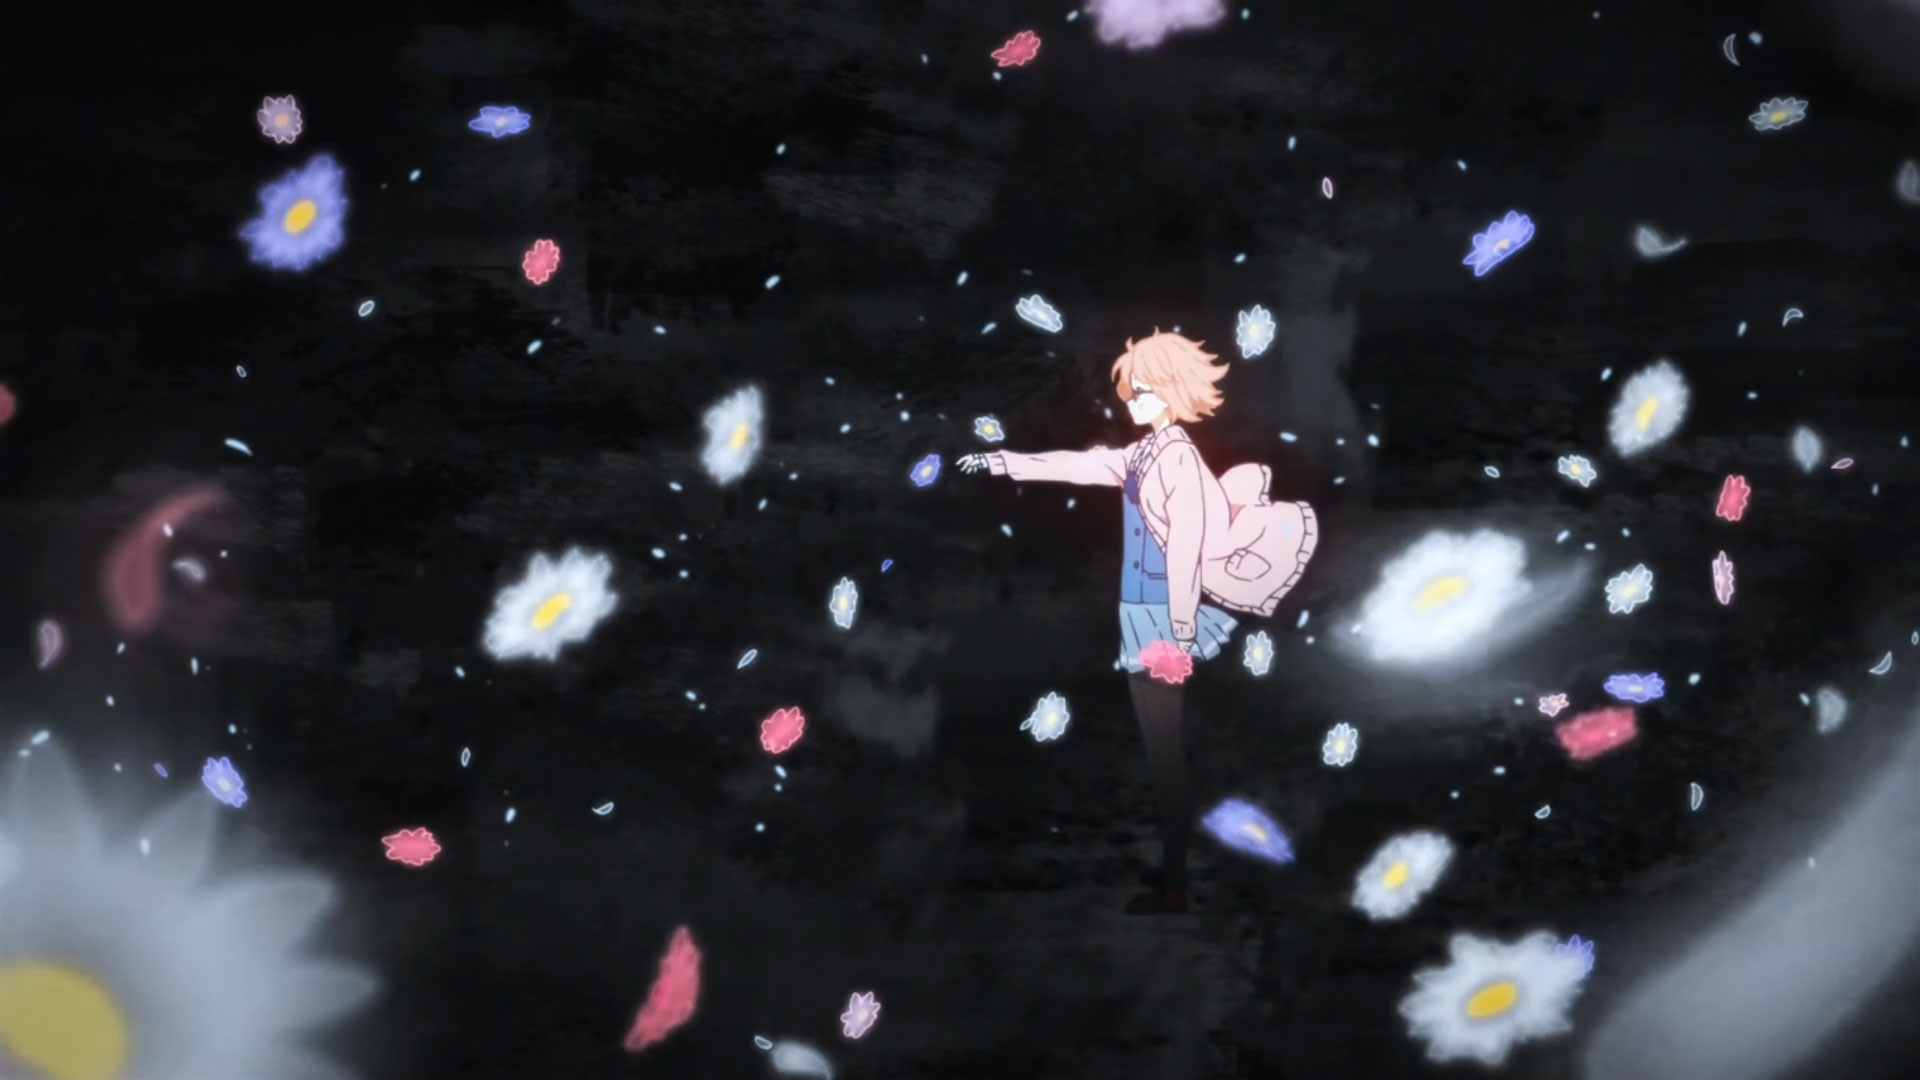 kyoukai no kanata wallpaper,rosa,cielo,acqua,prestazione,spazio